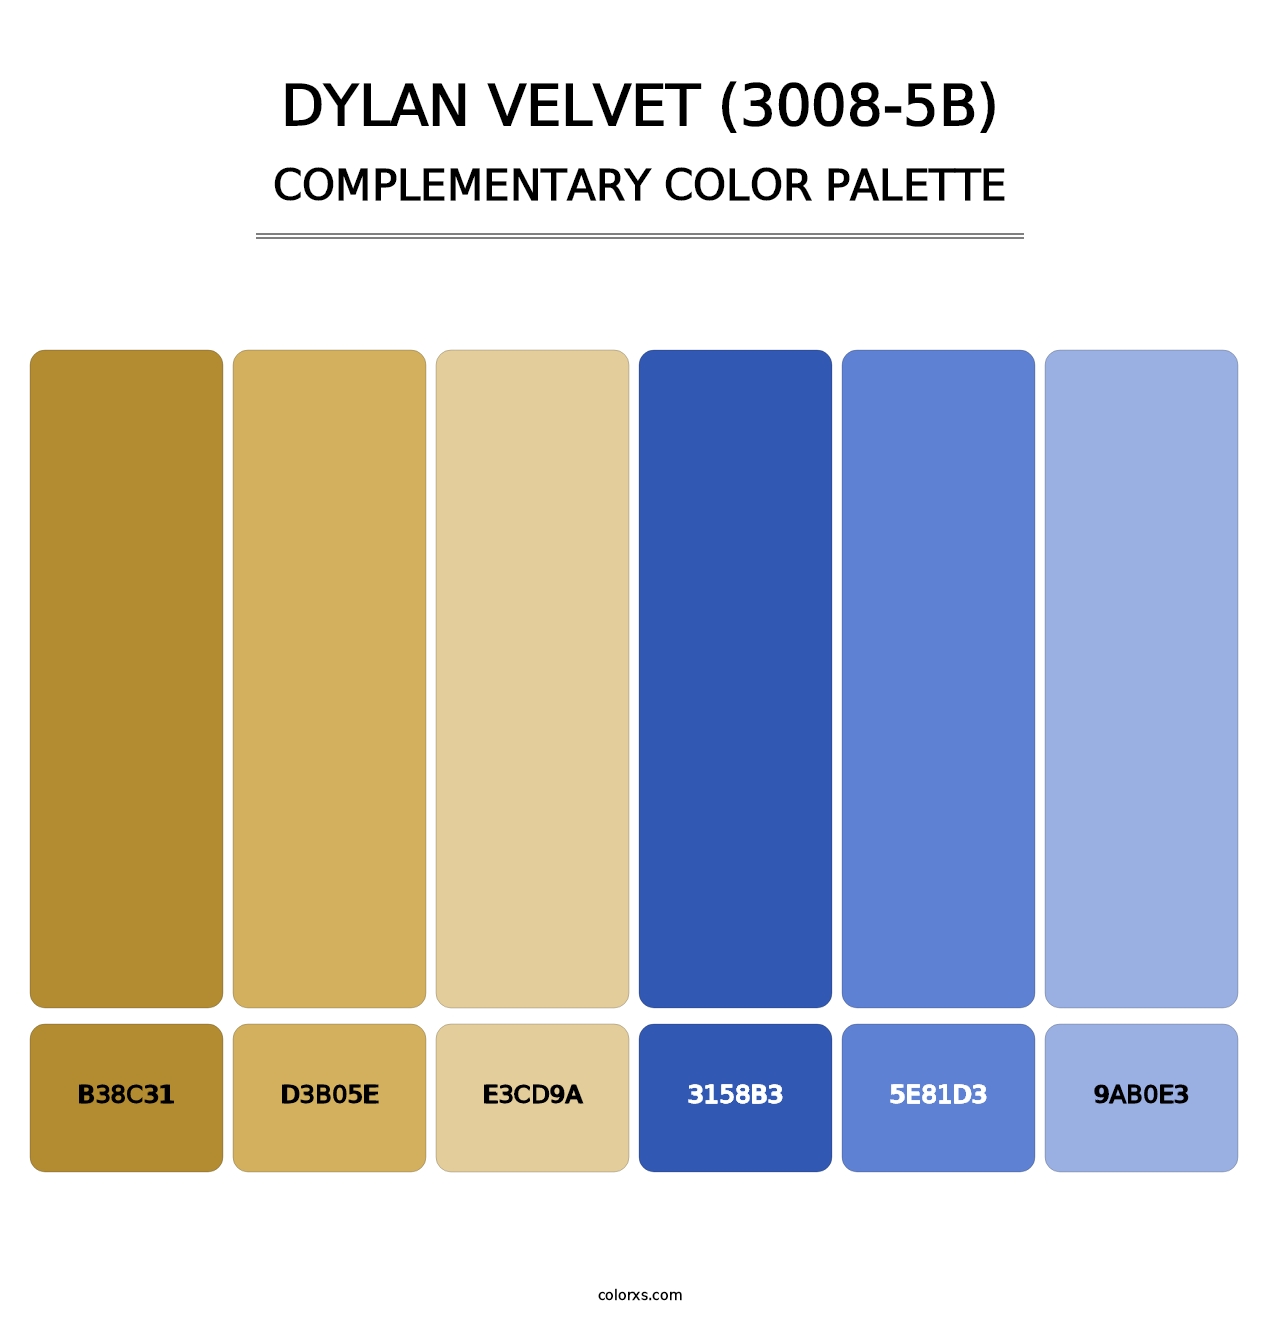 Dylan Velvet (3008-5B) - Complementary Color Palette